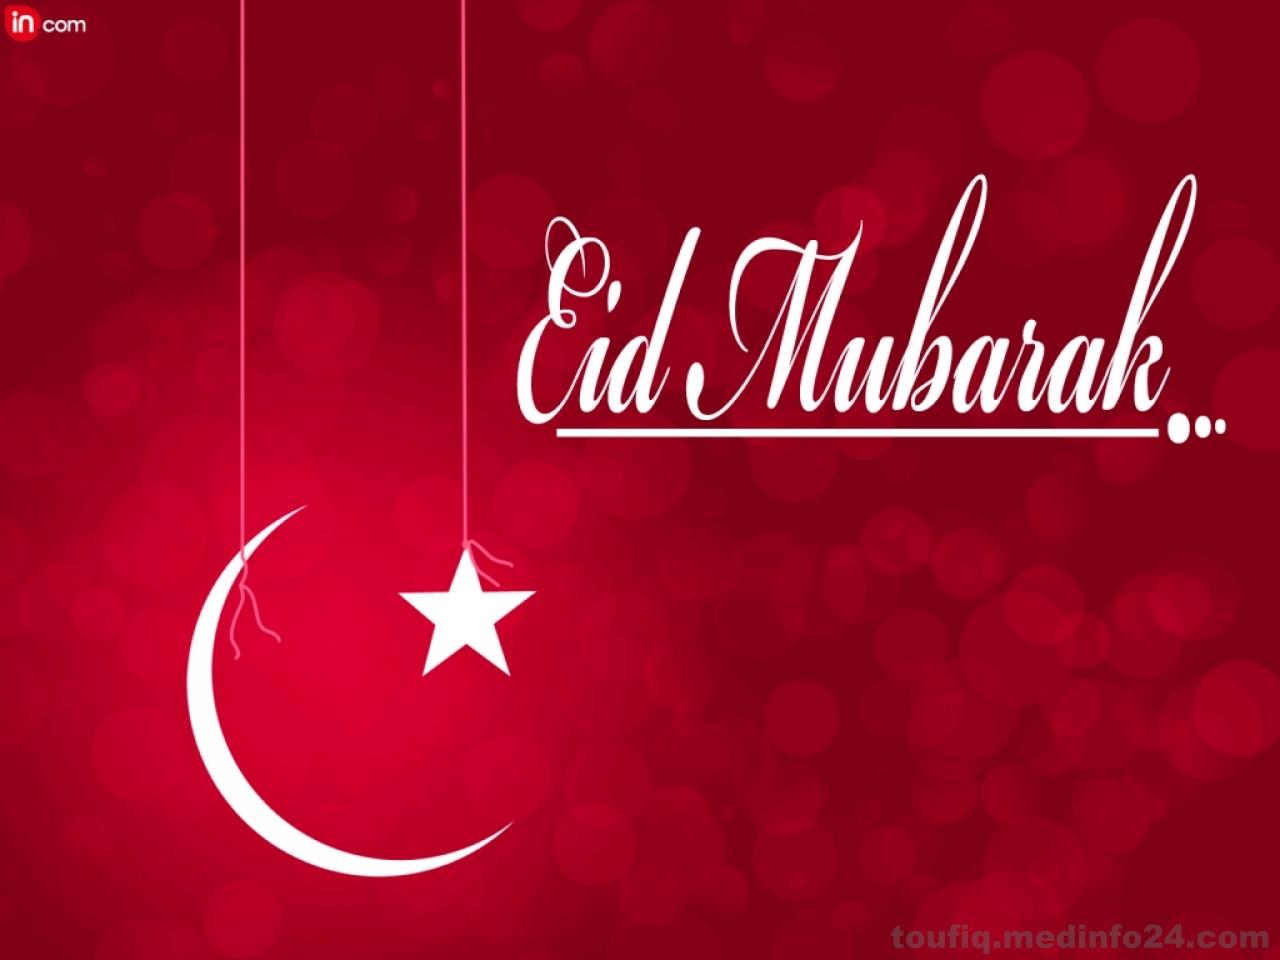 Eid mubarak pic ideas. Eid mubarak